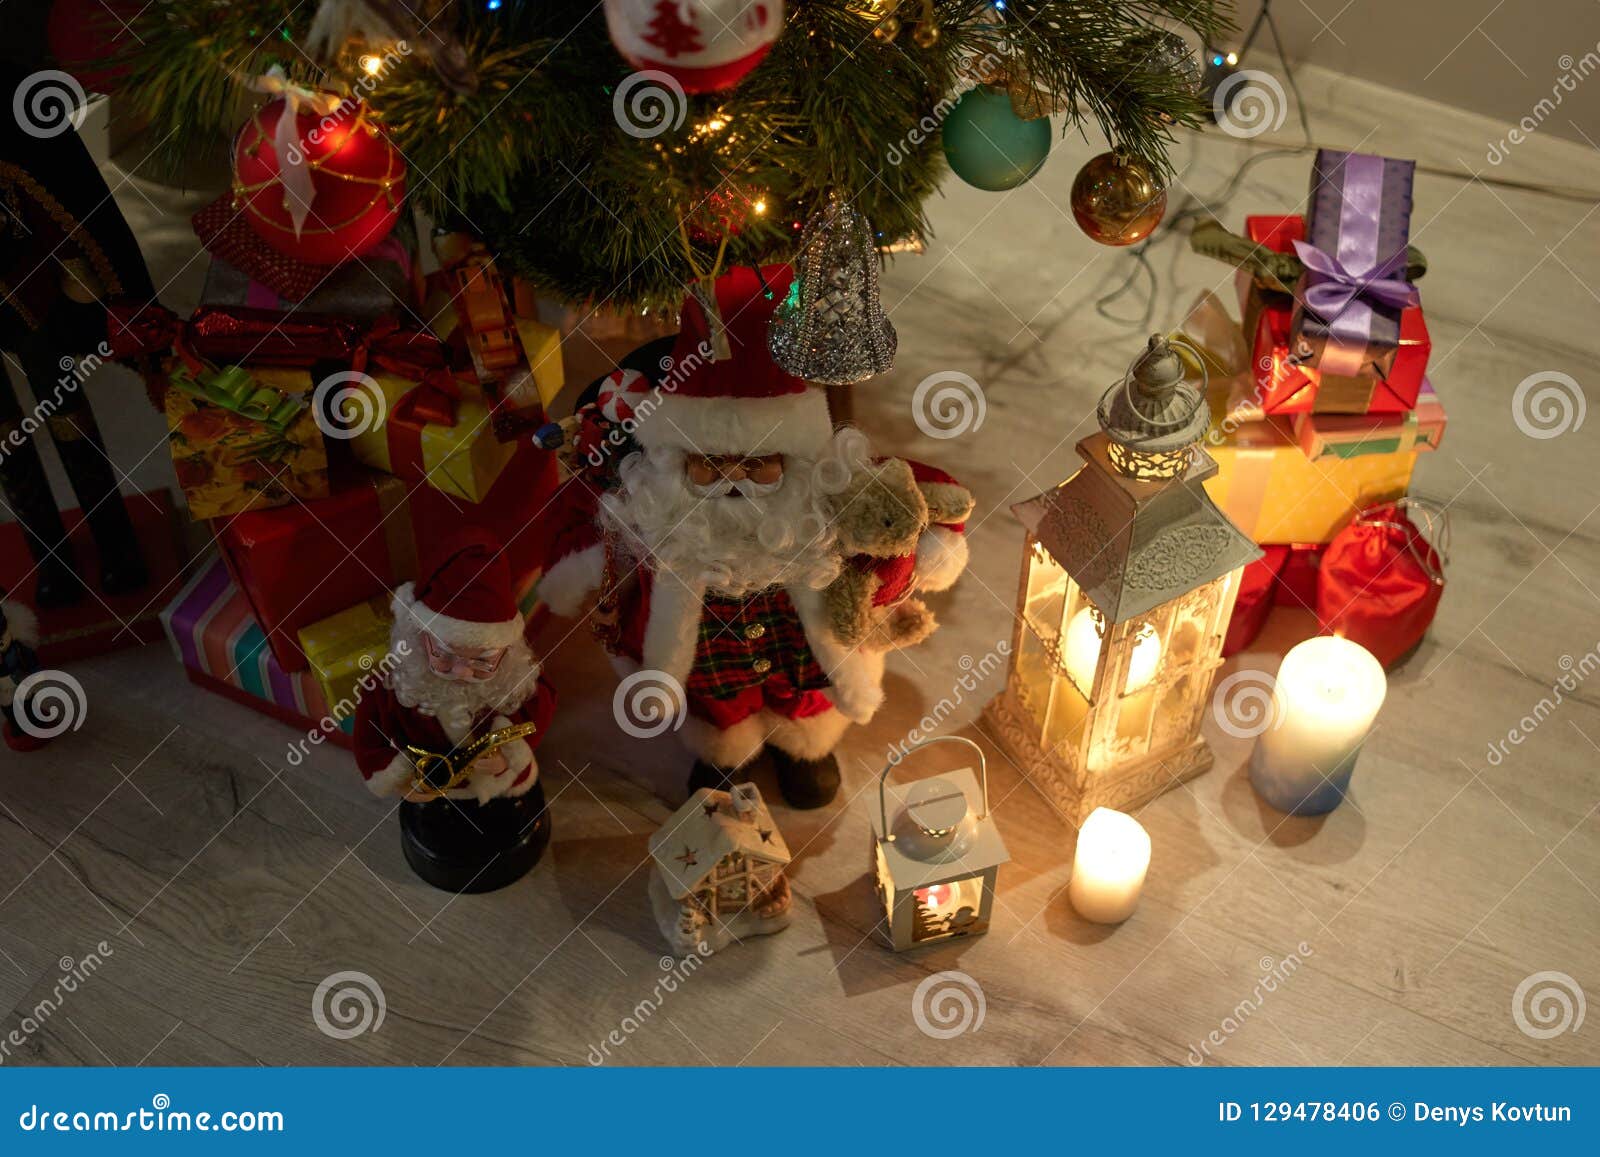 Natale Sotto L Albero.Regali E Decorazioni Di Natale Sotto L Albero Fotografia Stock Immagine Di Allegro Celebrazione 129478406